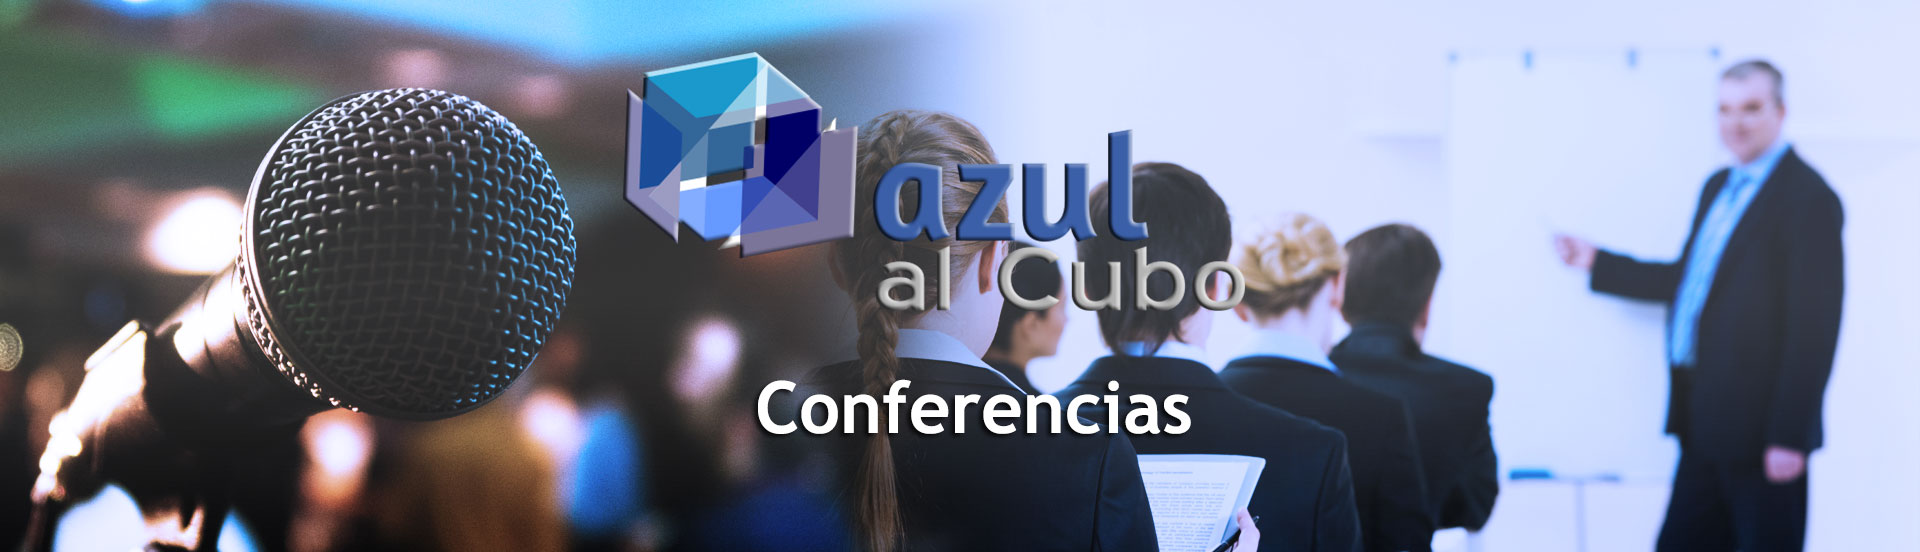 Conferencias Azul al Cubo